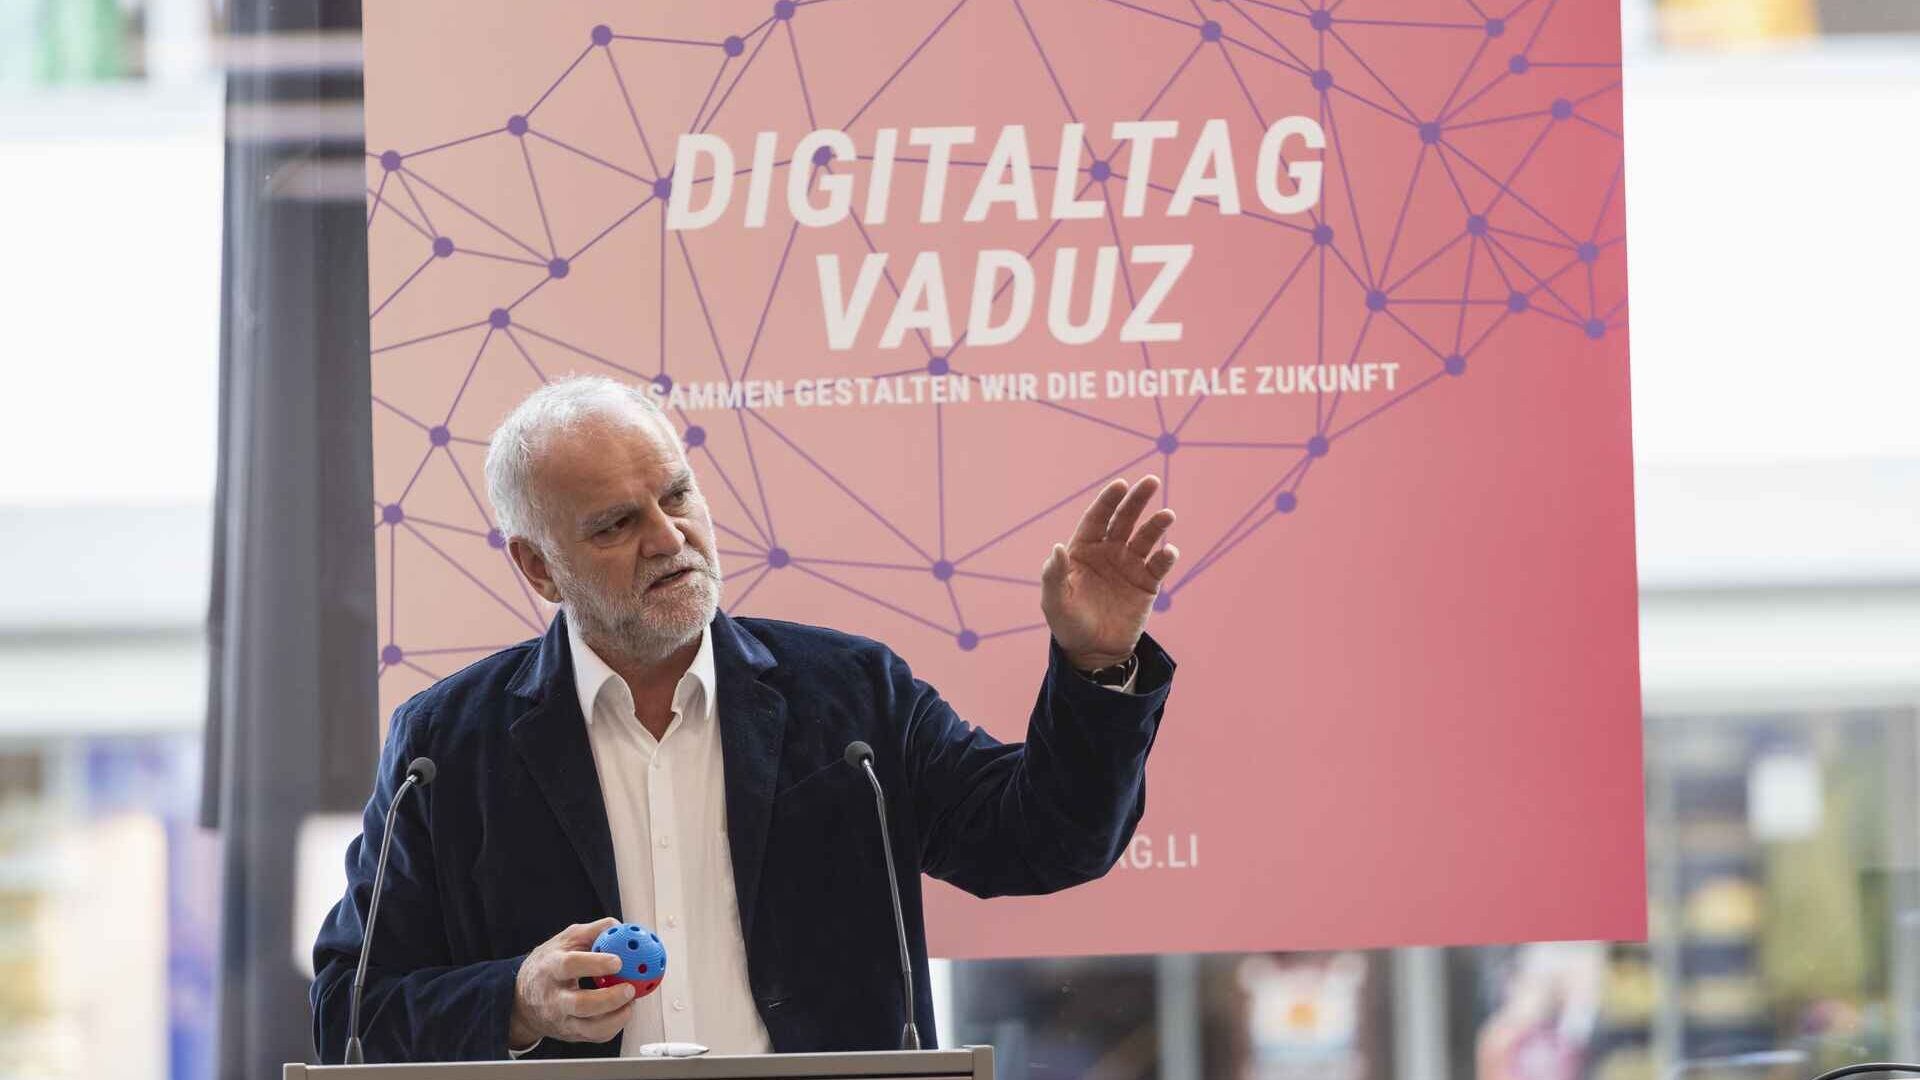 La “Digitaltag Vaduz” è stata accolta dal Kunstmuseum della capitale del Principato del Liechtenstein sabato 15 ottobre 2022